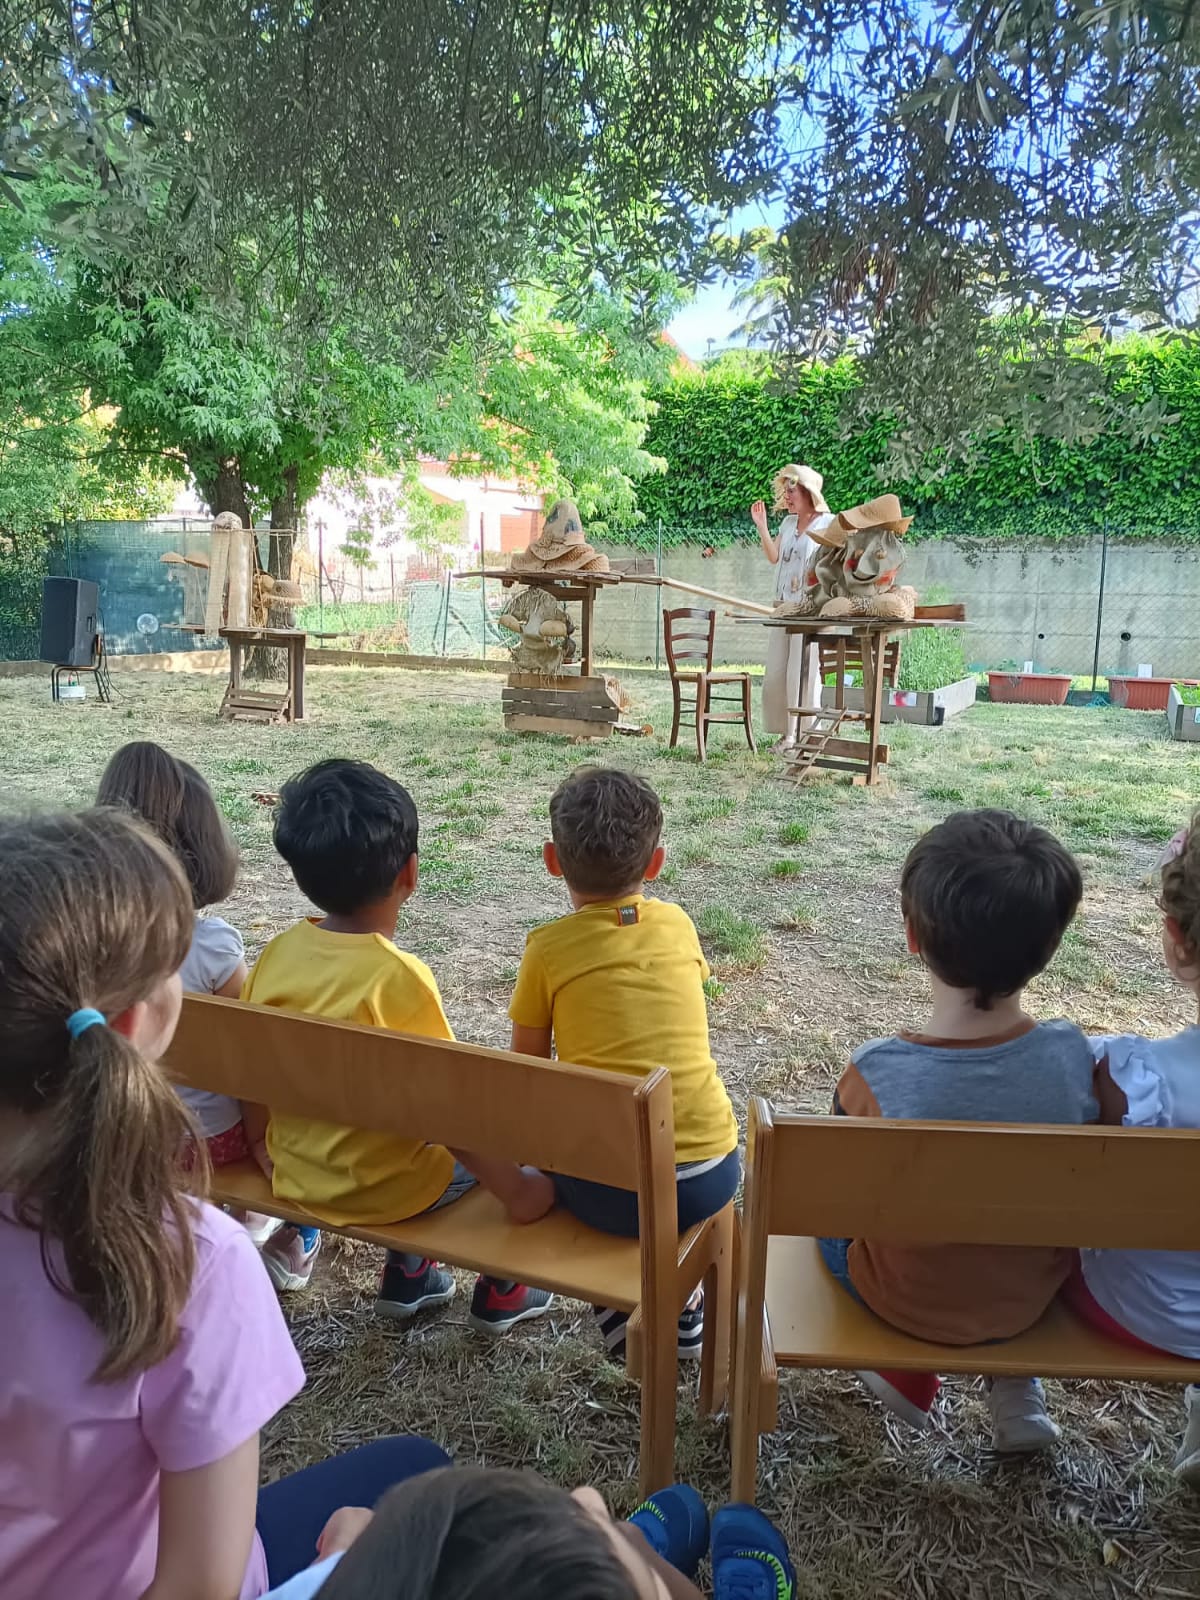 Alla scuola dell’infanzia "Il Girotondo" uno spettacolo teatrale e due nuovi alberi per celebrare la diversità (Fonte foto Comune di Fucecchio)